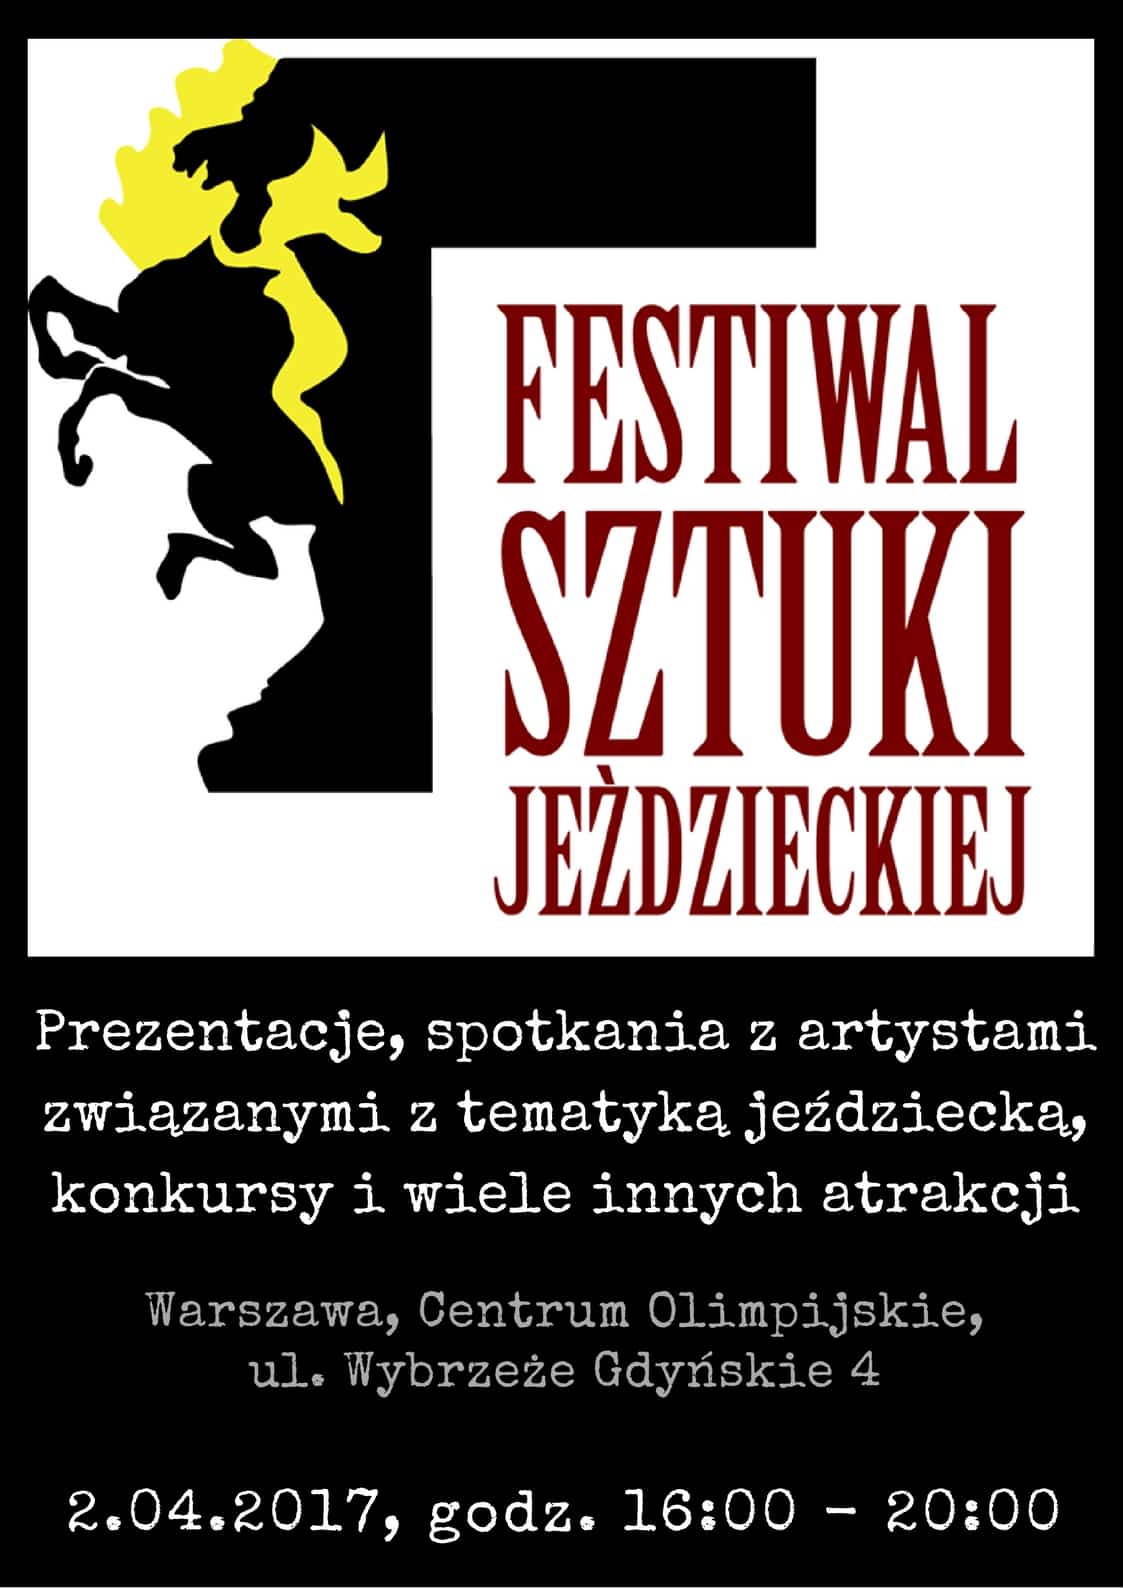 Festiwal Sztuki Jeździeckiej 2017